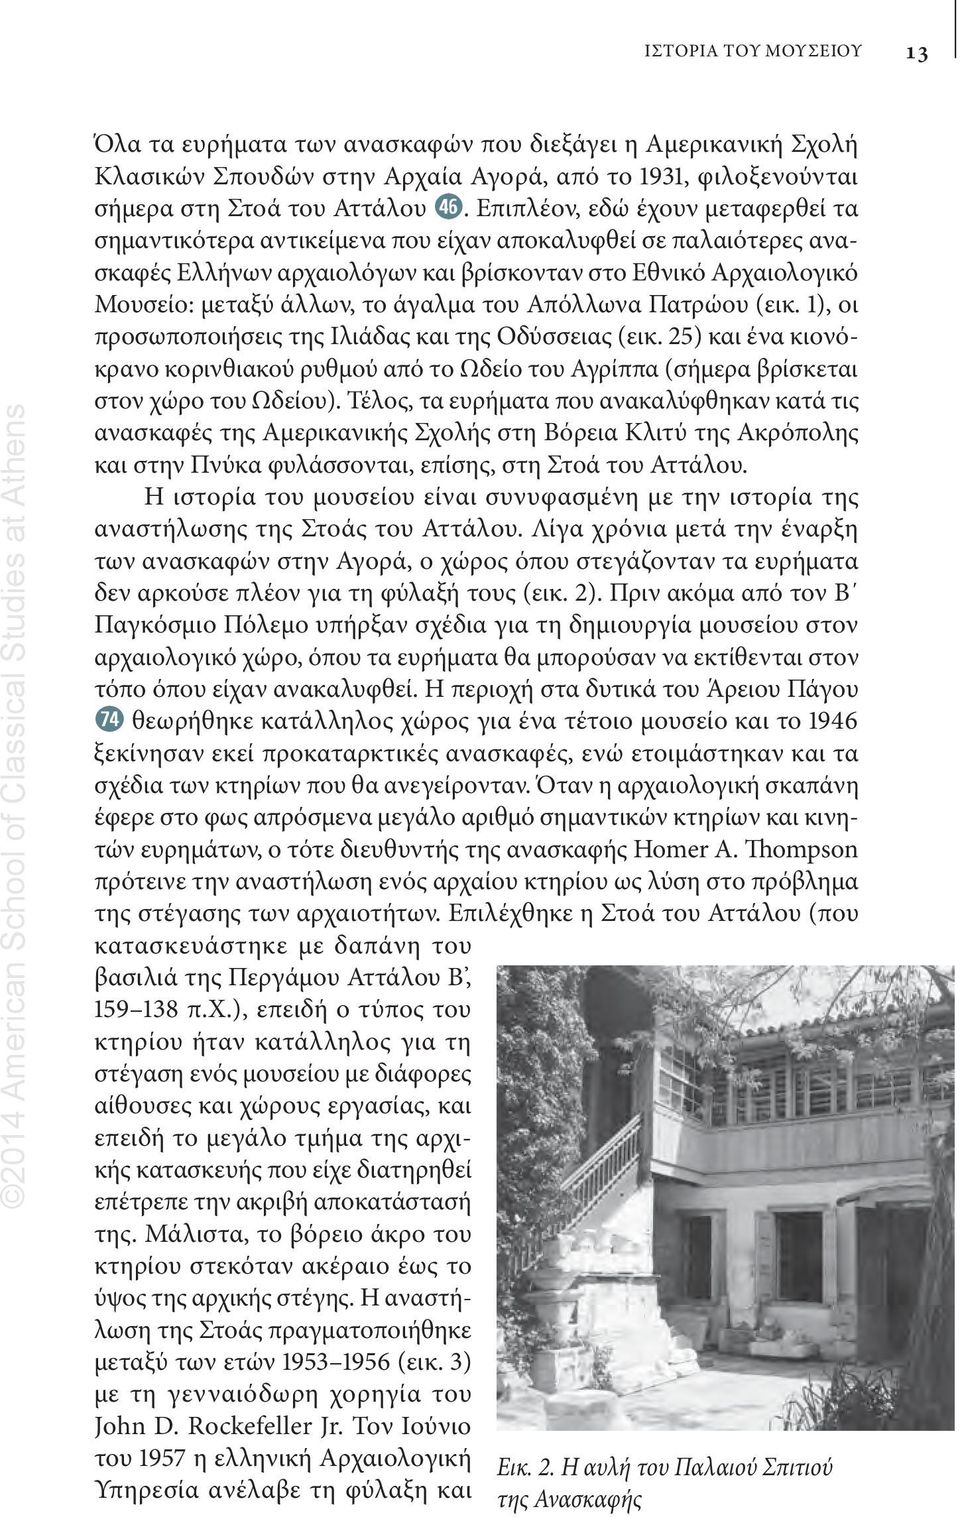 του Απόλλωνα Πατρώου (εικ. 1), οι προσωποποιήσεις της Ιλιάδας και της Οδύσσειας (εικ. 25) και ένα κιονόκρανο κορινθιακού ρυθμού από το Ωδείο του Αγρίππα (σήμερα βρίσκεται στον χώρο του Ωδείου).